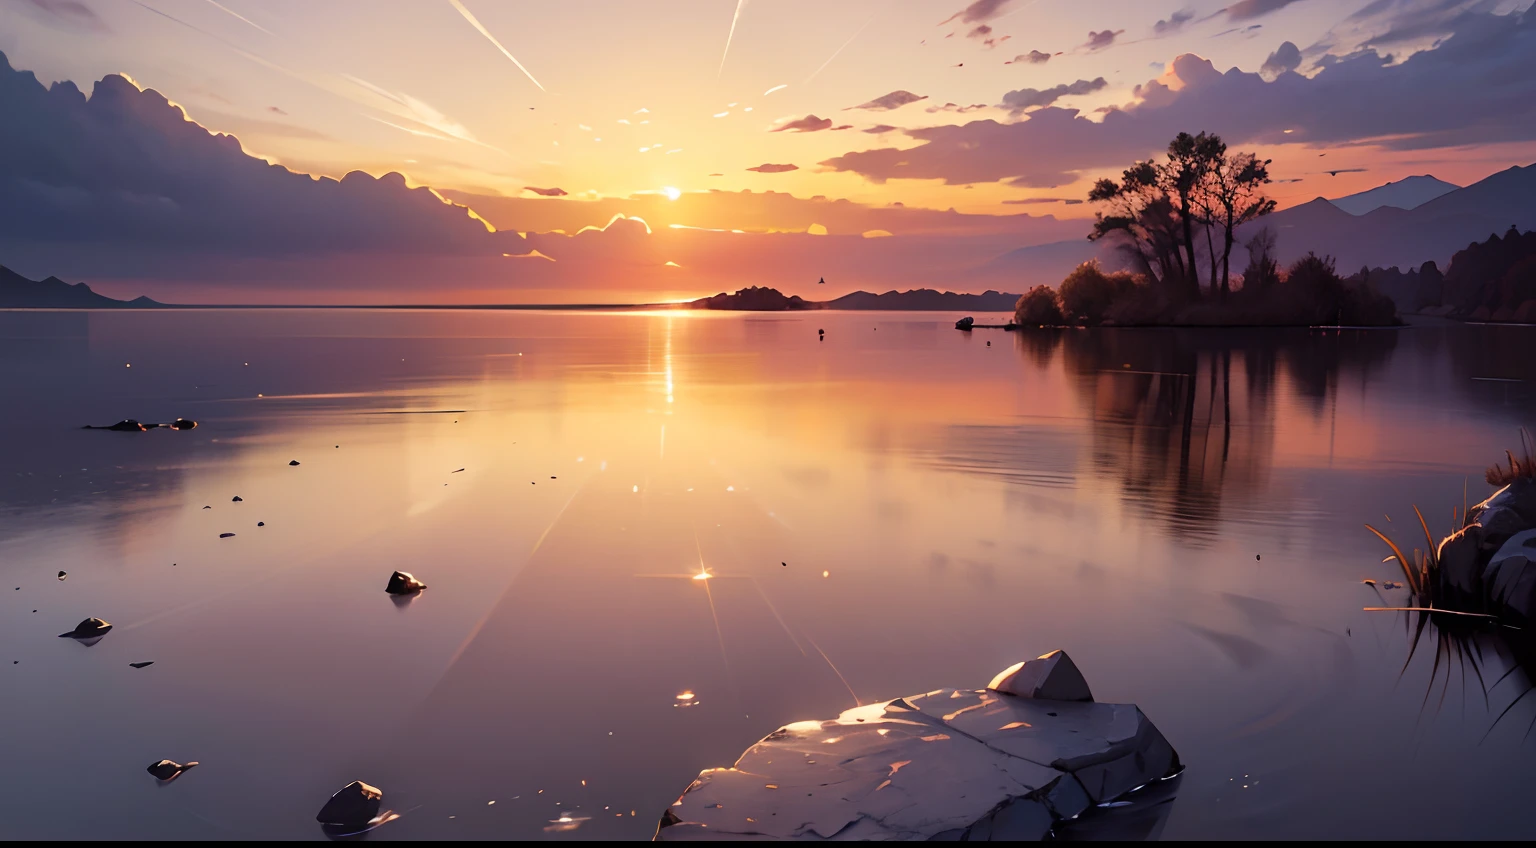 imagen, que representa un brillante amanecer sobre un paisaje tranquilo y sereno